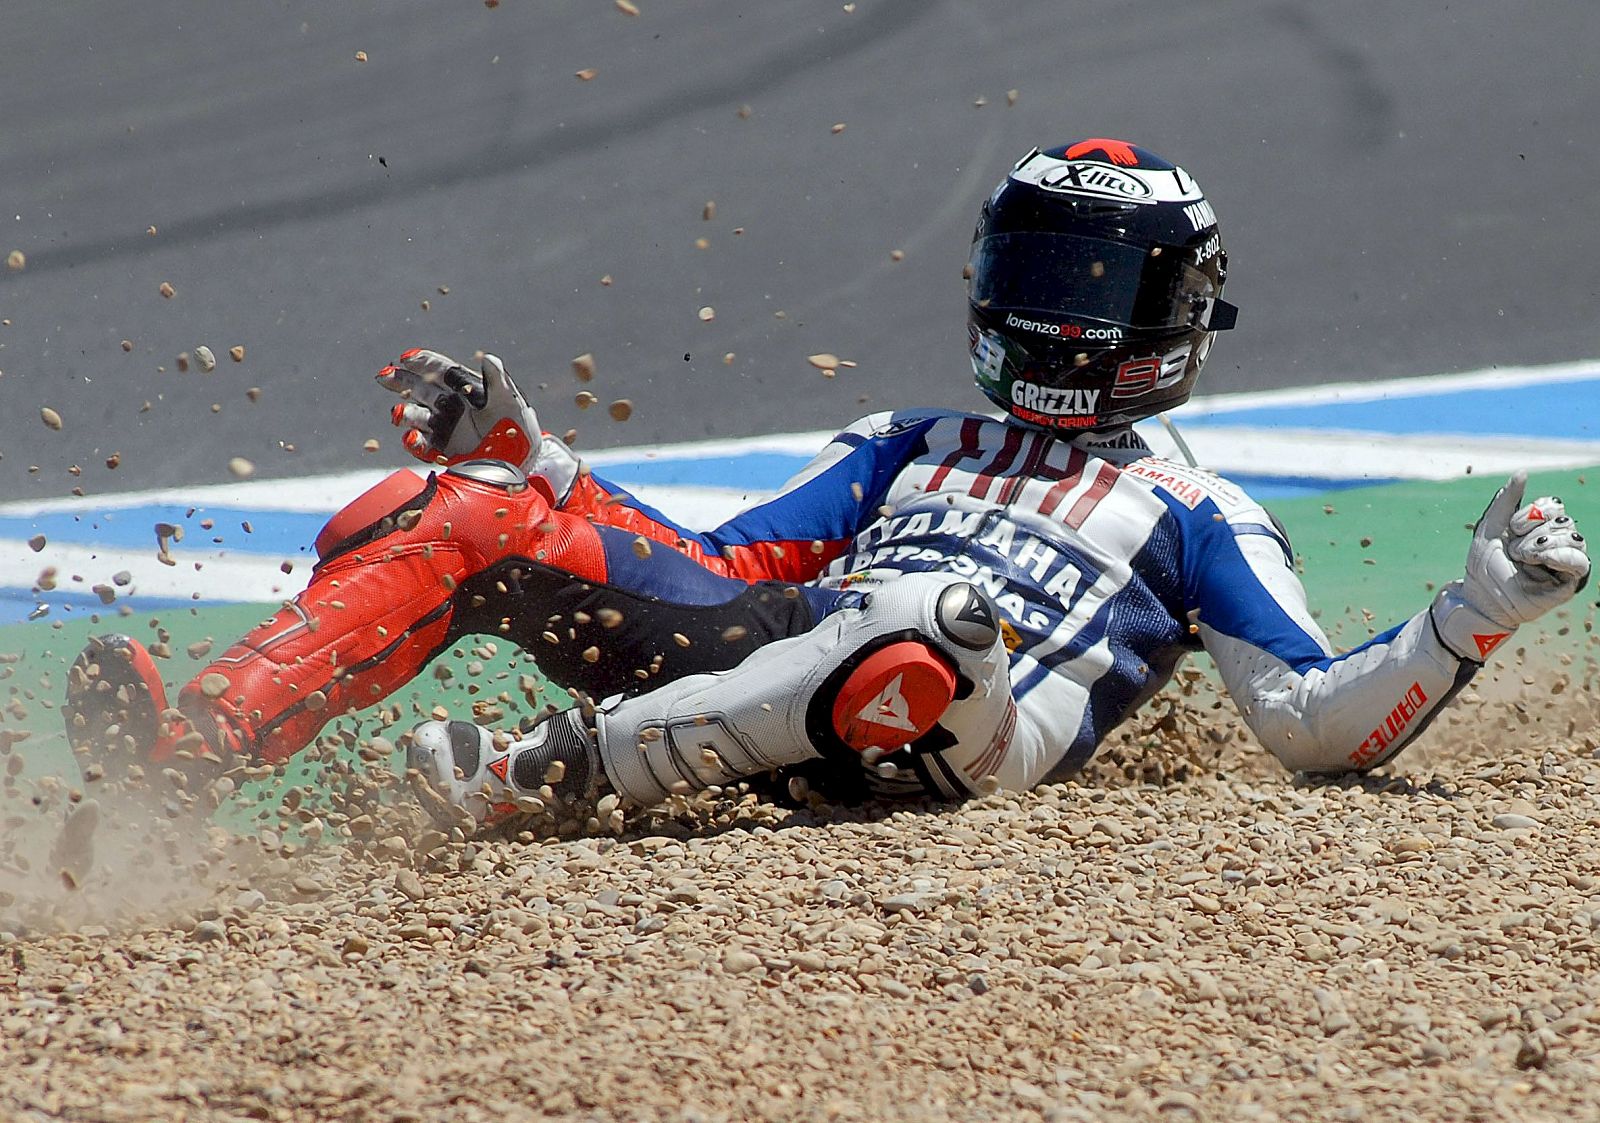 Jorge Lorenzo, en el momento en el que se cae de la moto en mitad de la curva de Angel Nieto.